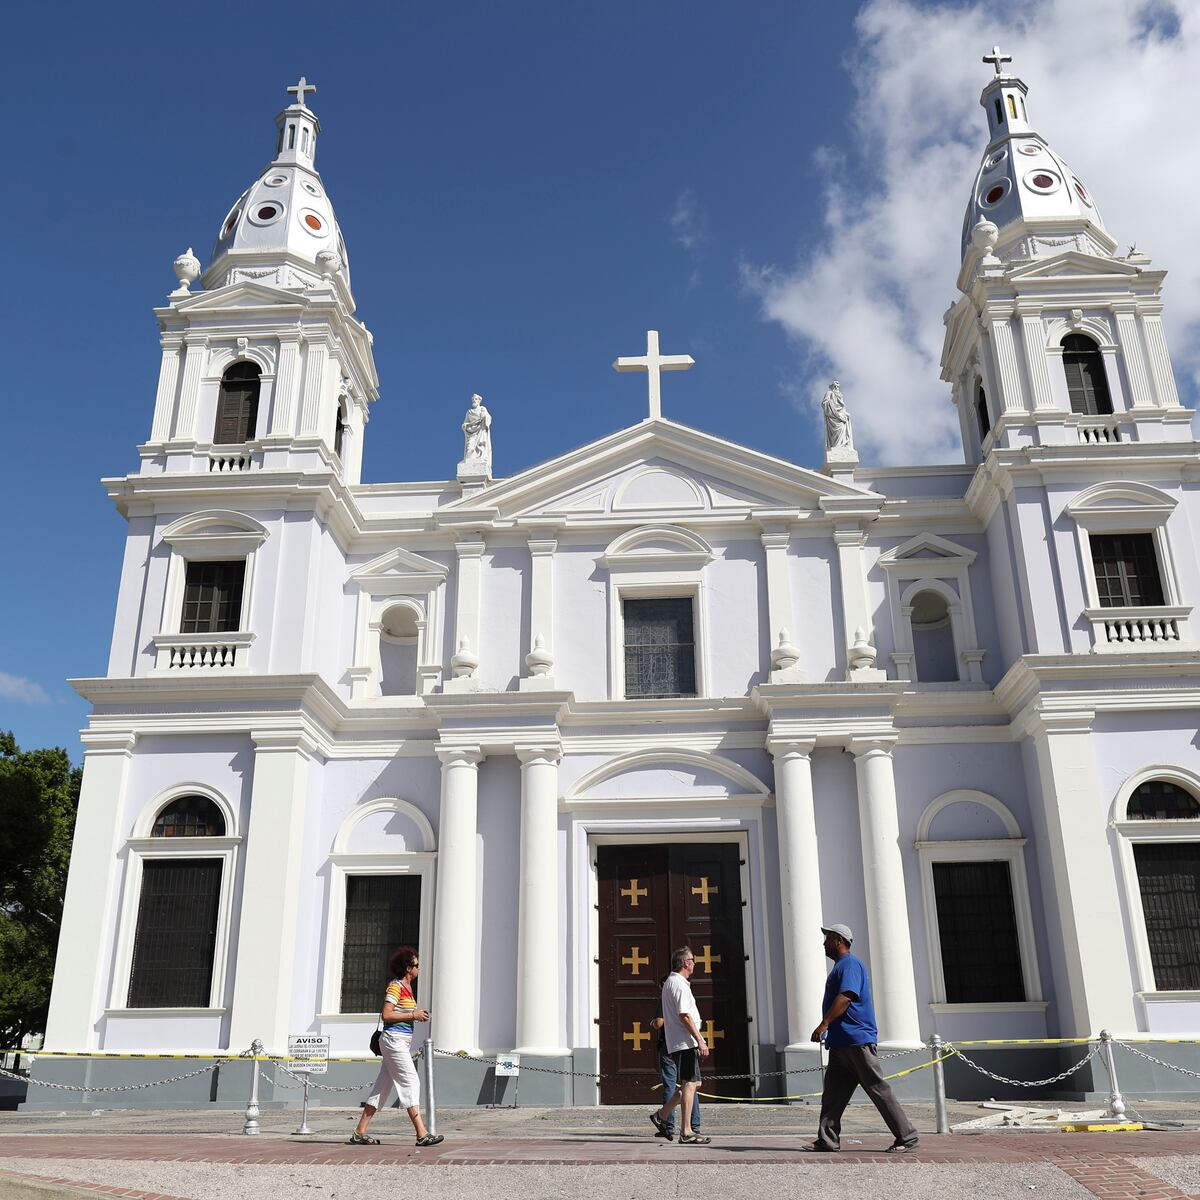 Versiones encontradas sobre posible demolición de catedral de Ponce - Primera Hora